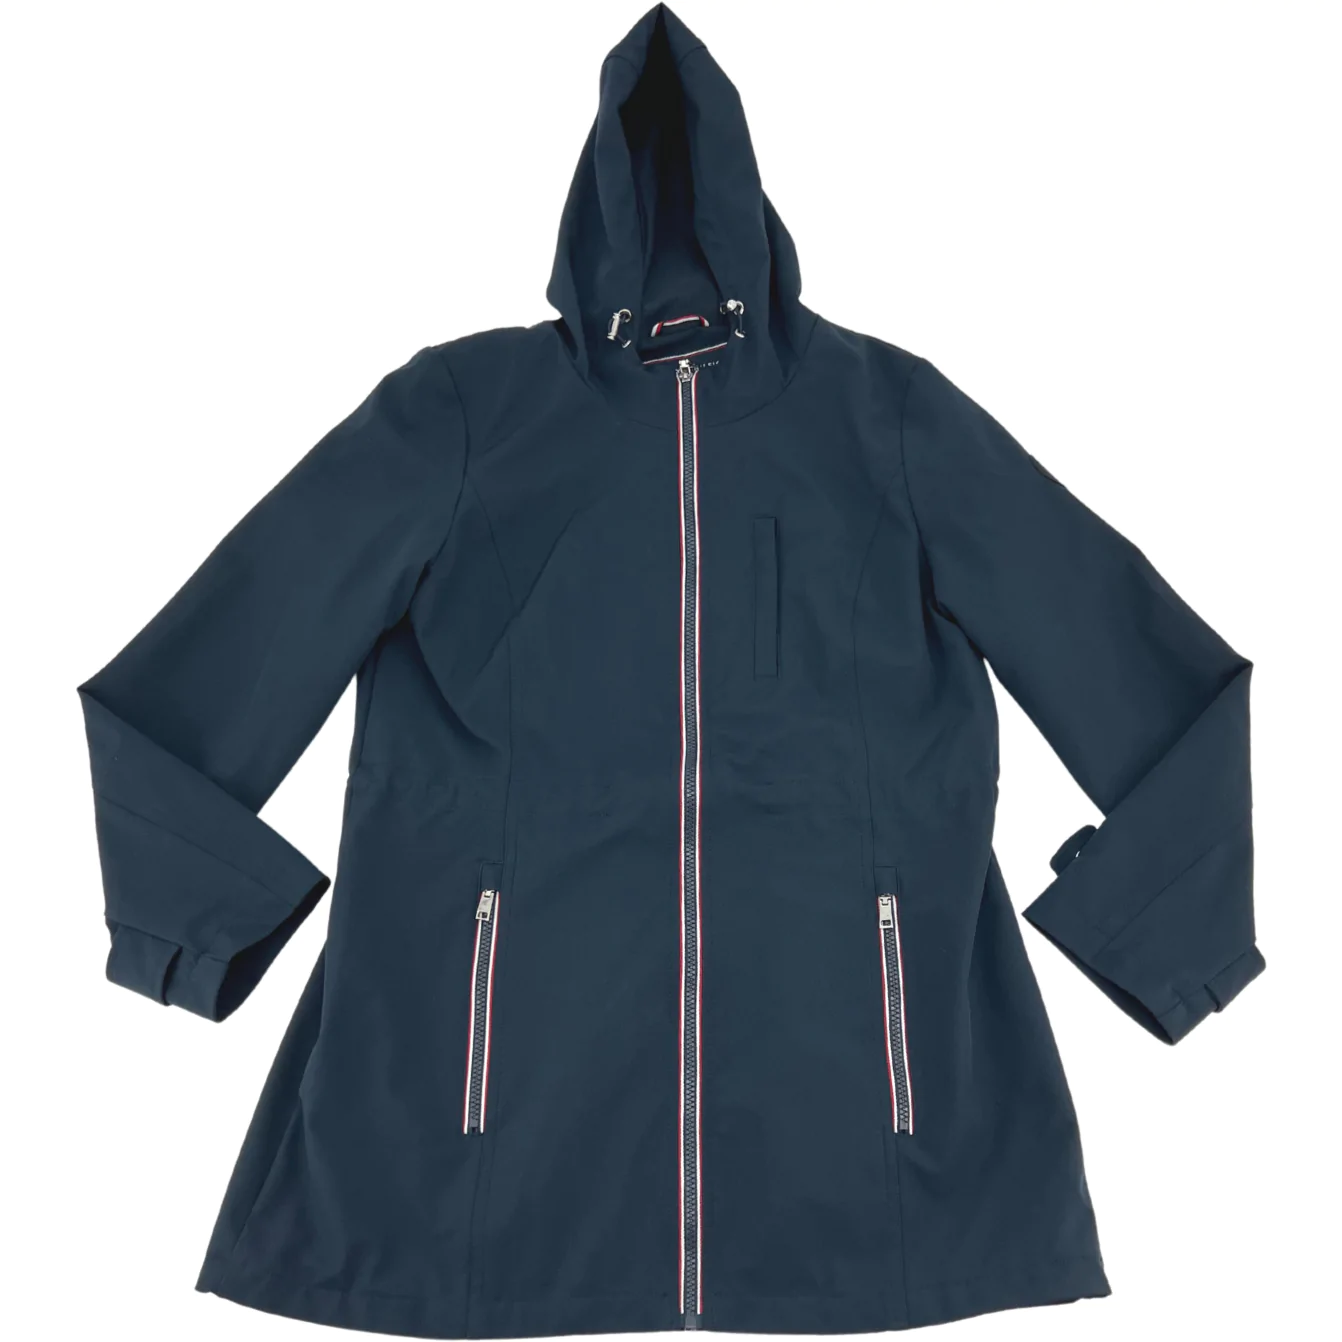 Tommy Hilfiger Women's Jacket / Long Coat / Navy / Size Medium